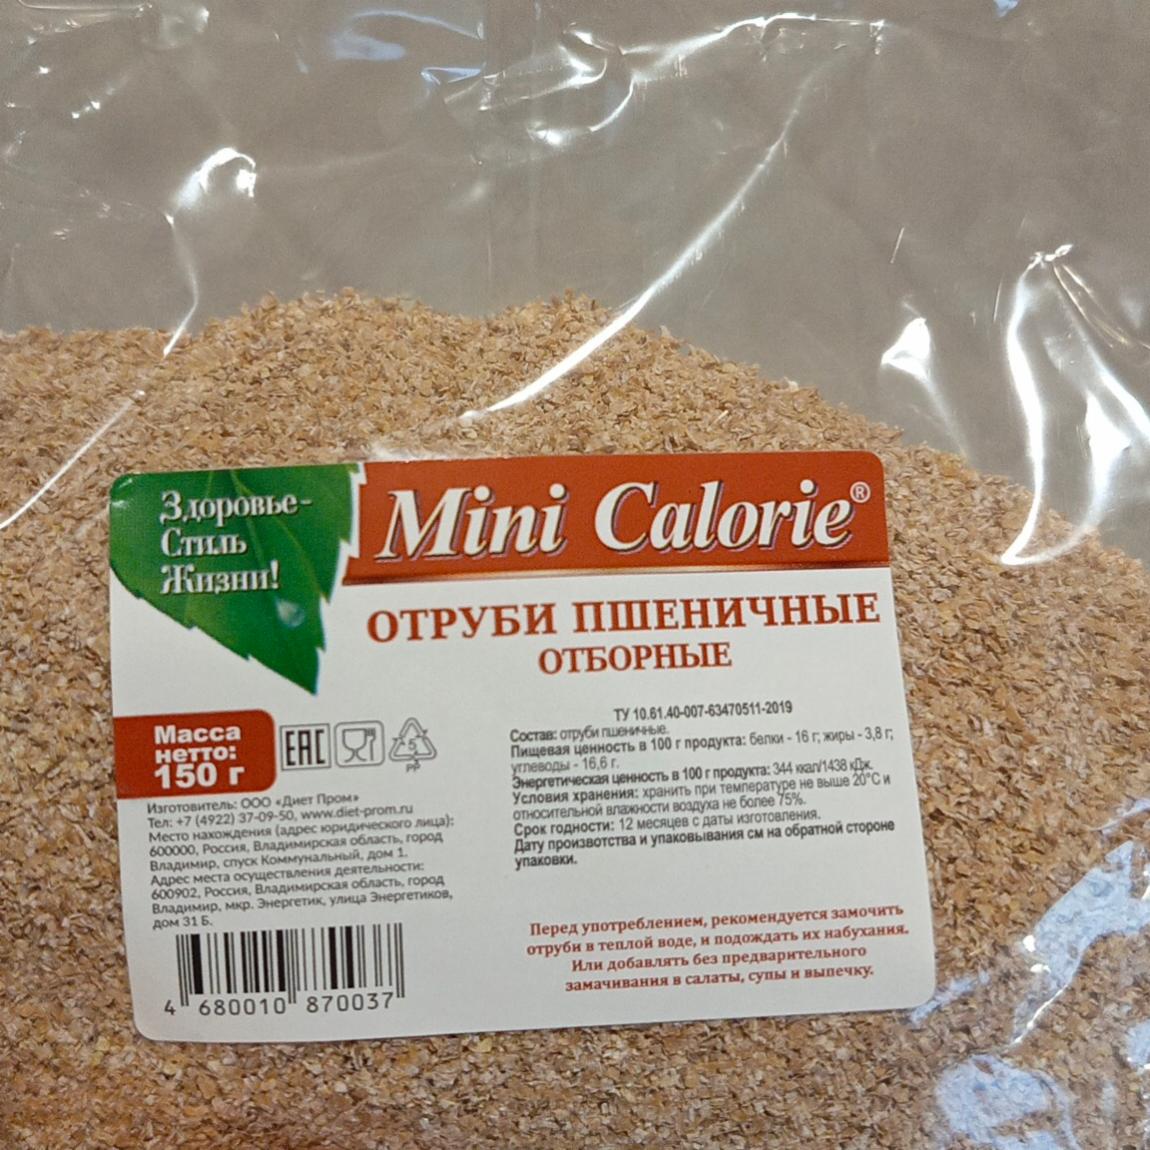 Фото - Отруби пшеничные отборные Mini Calorie